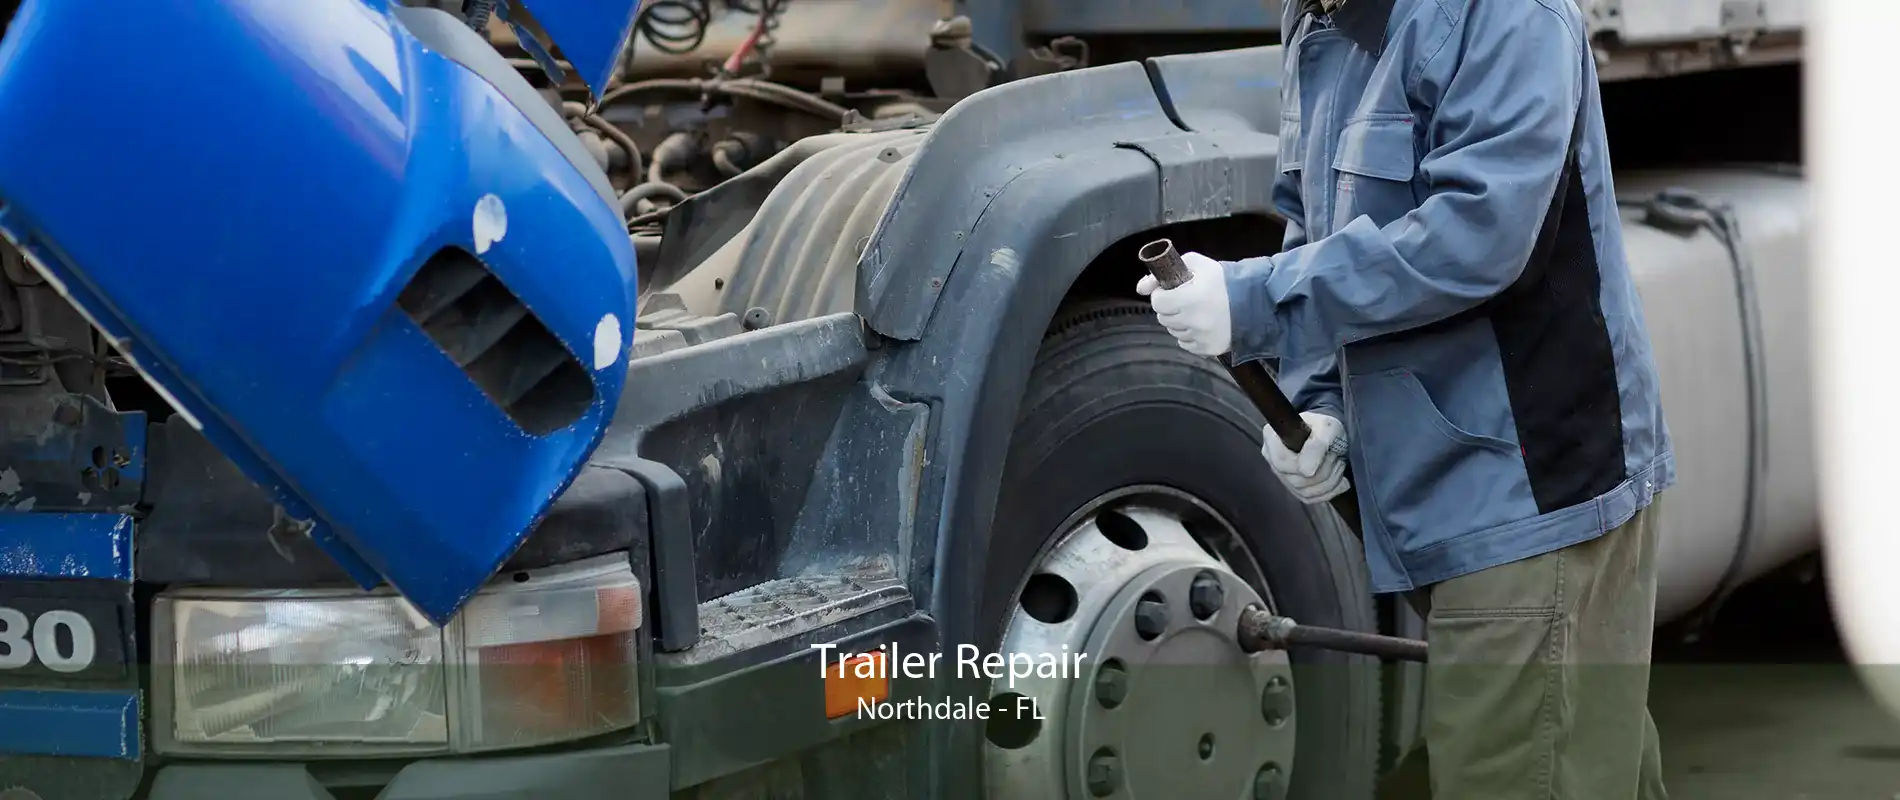 Trailer Repair Northdale - FL